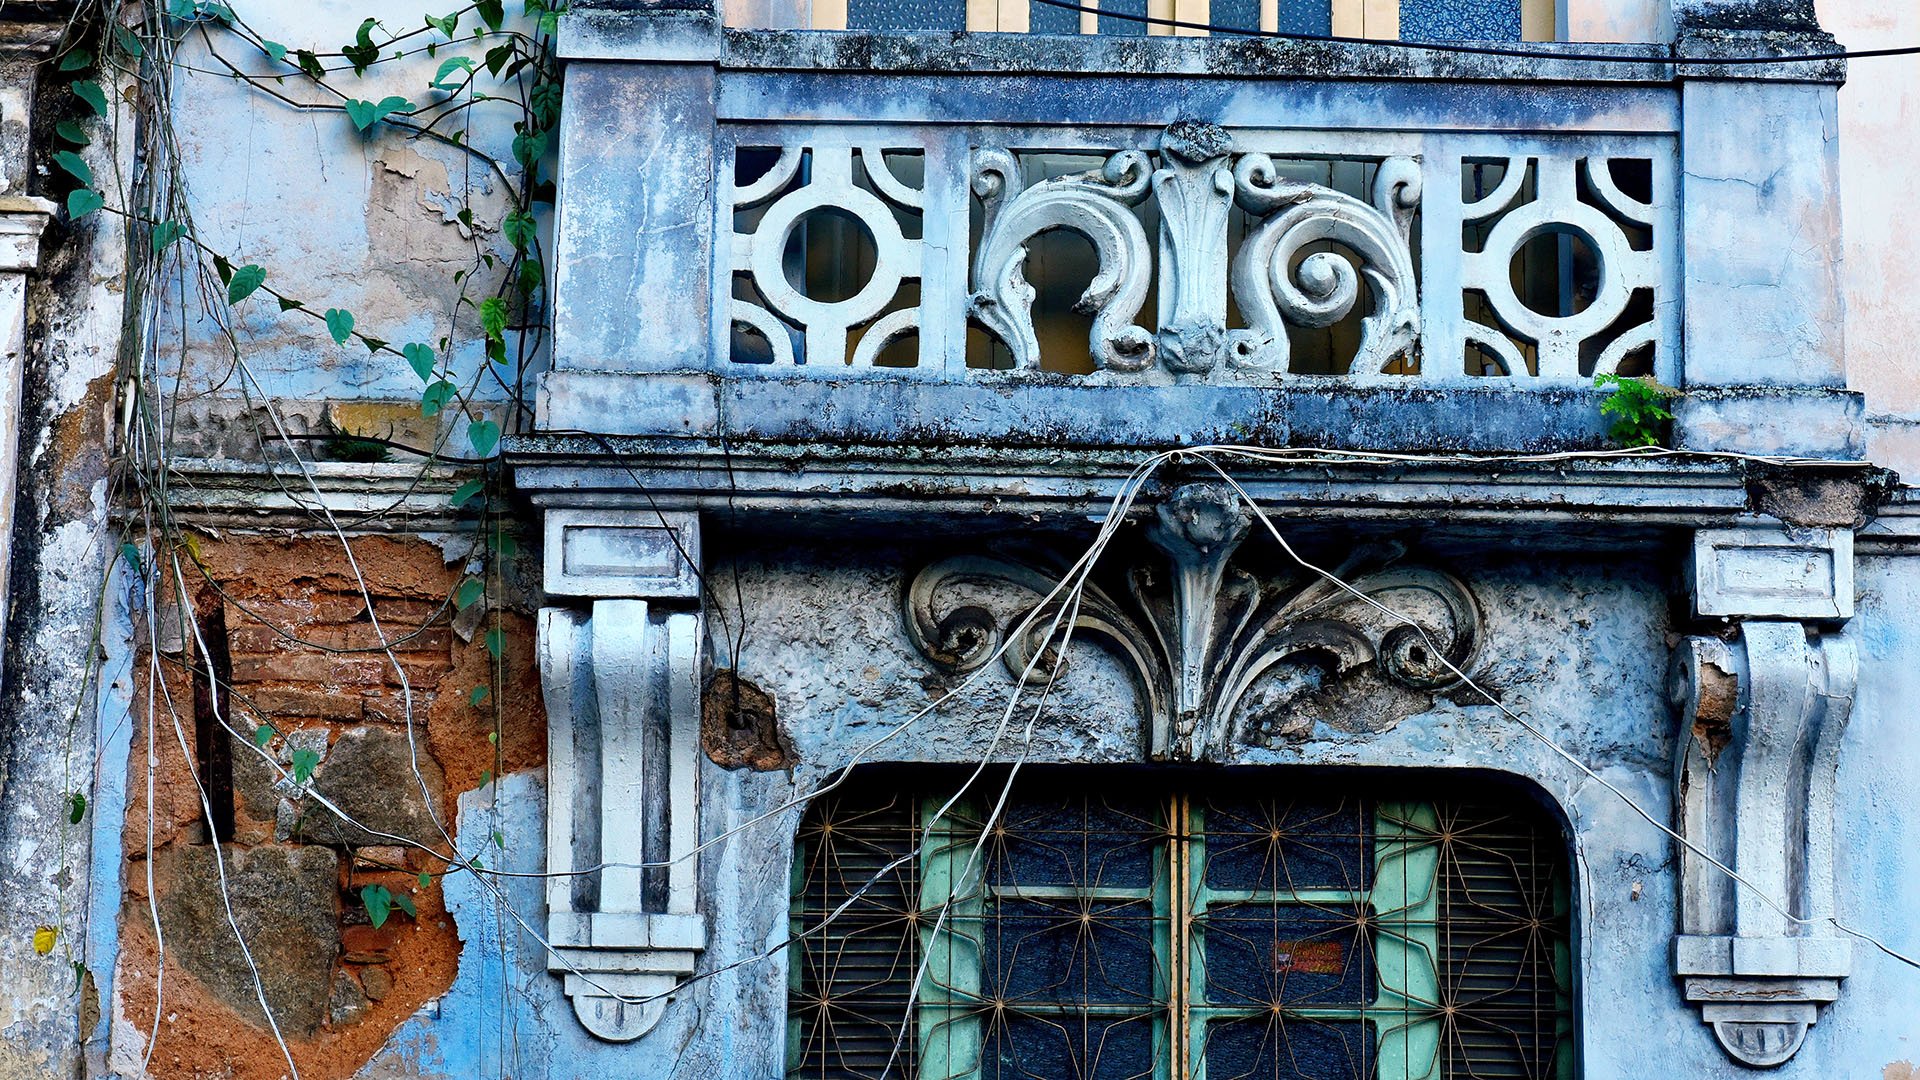 História Abandonada - Ensaio fotográfico com foco nos detalhes da arquitetura de época, ação do tempo e o descaso com alguns prédios no Centro Histórico de Vitória.